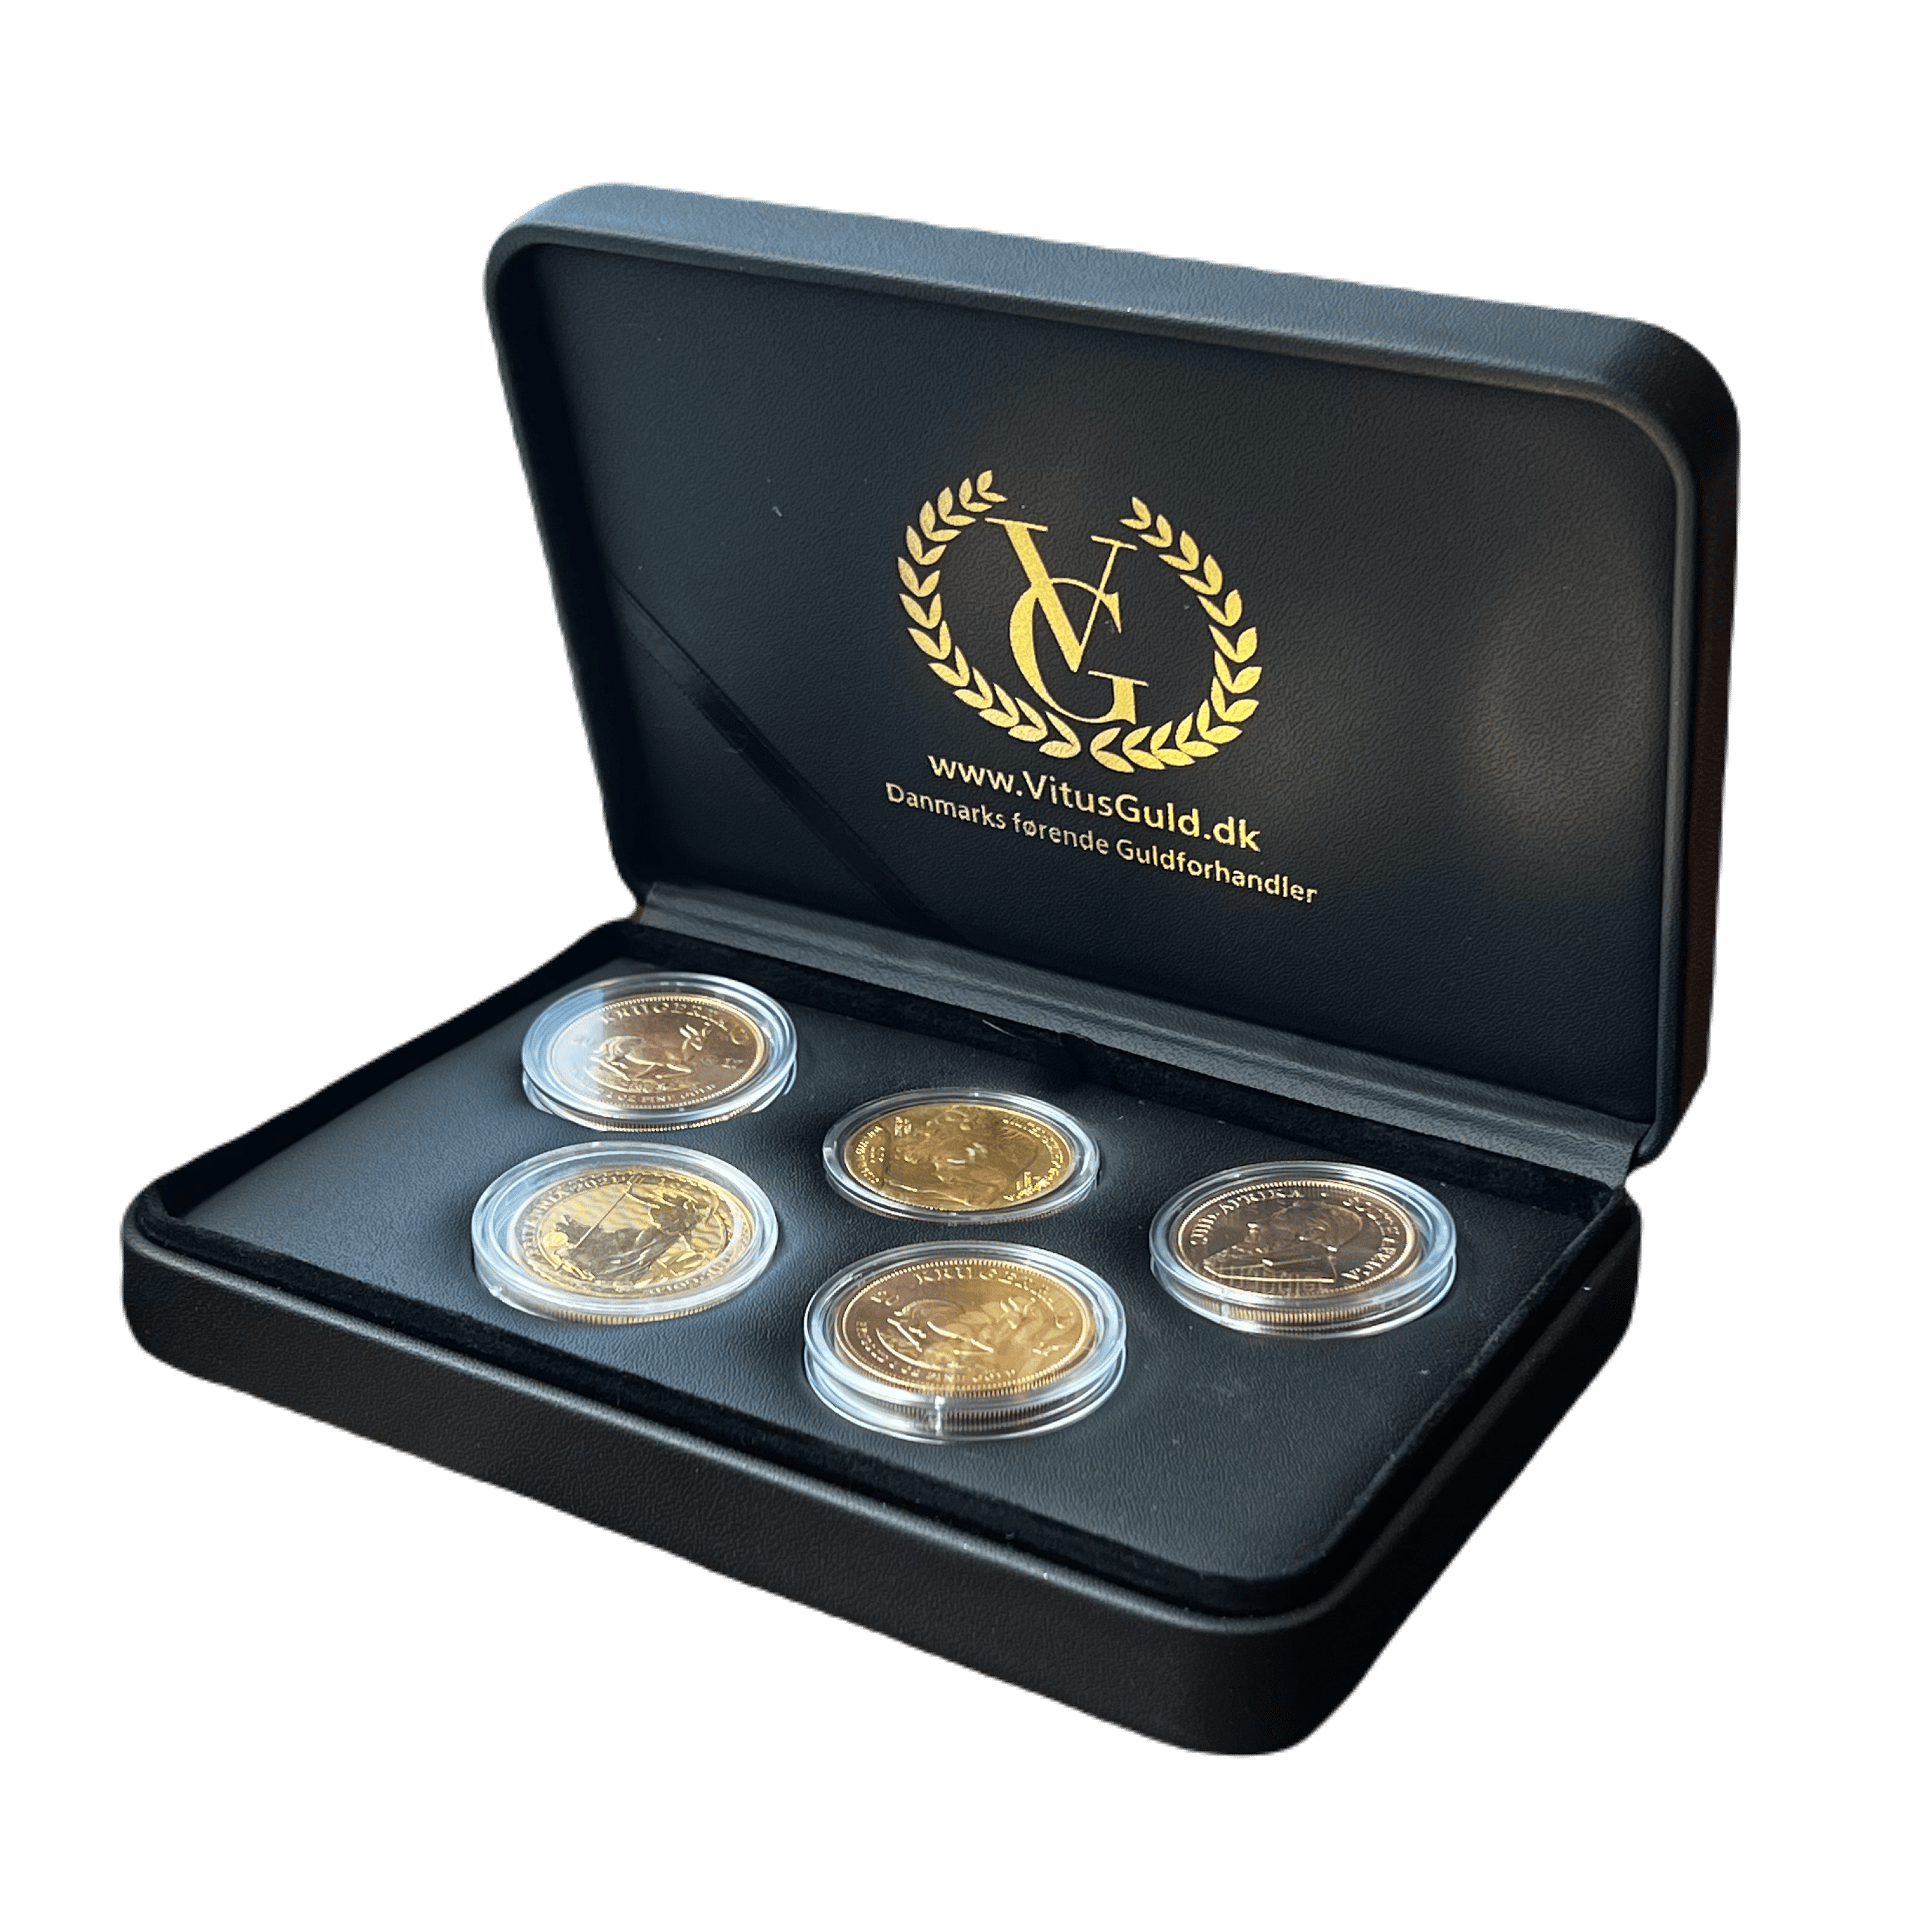 Guldmønt æske - opbevaring af guldmønter - køb guldmønter hos Vitus Guld til bedste guldpriser